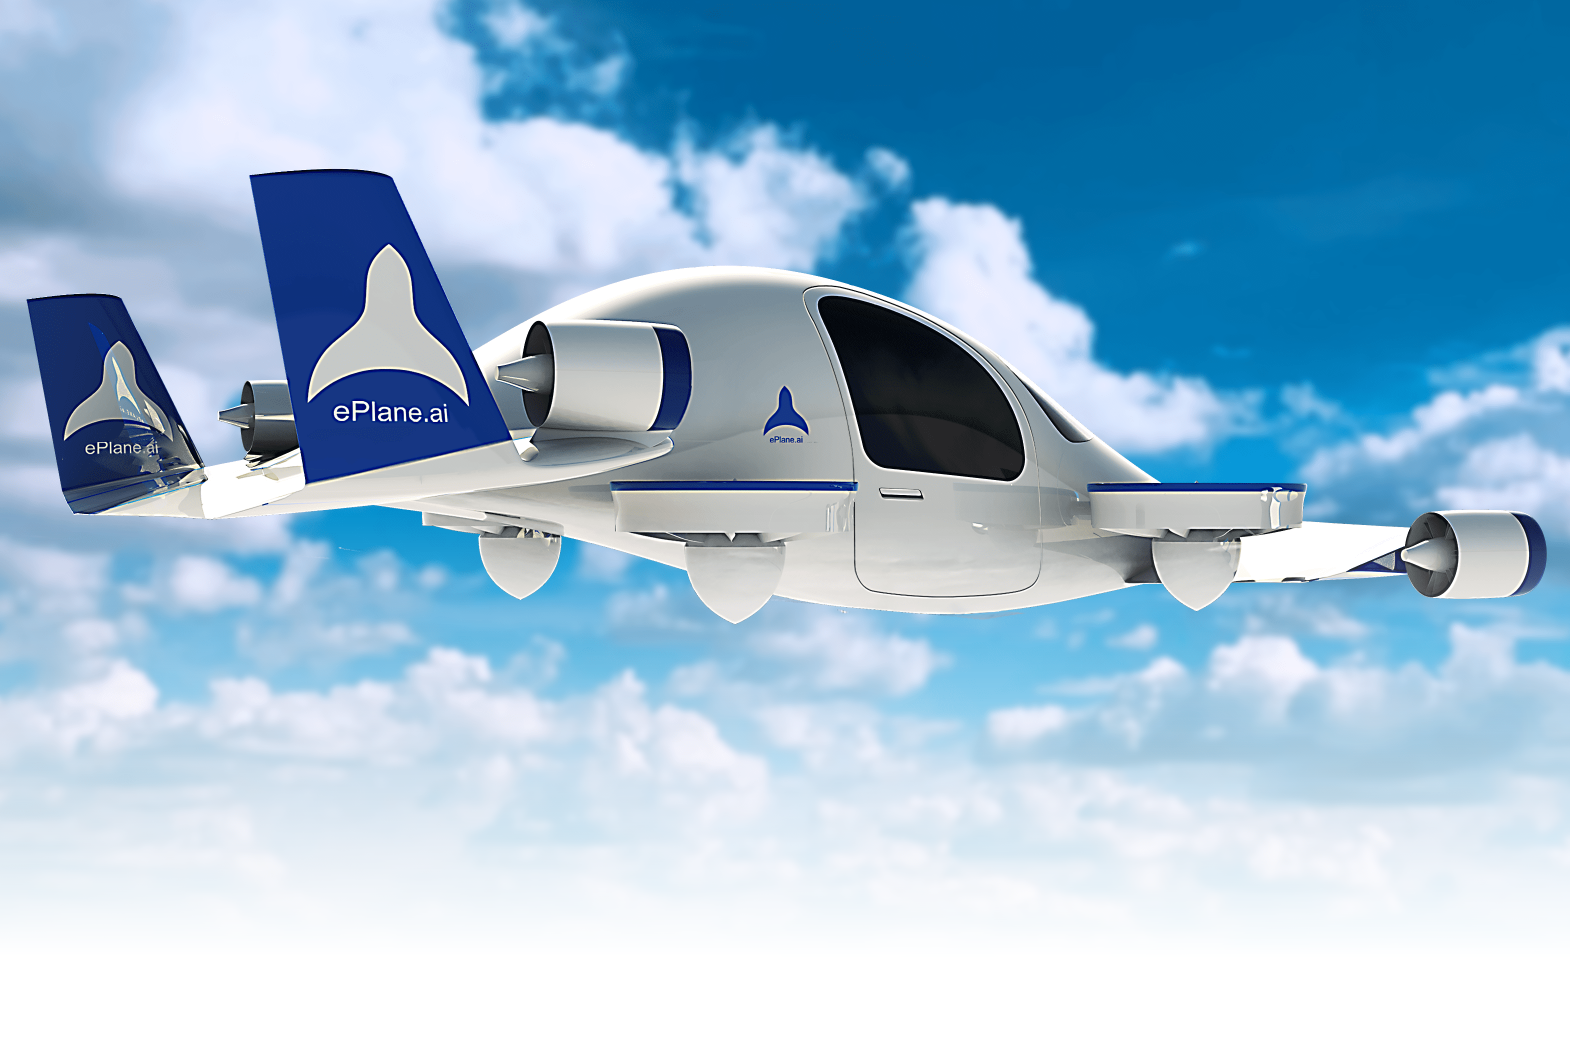 Grundaren av ePlane sa att företaget planerar att släppa den första prototypen av flygtaxin i slutet av 2024 och lansera fullskalig kommersialisering i Indien 2027